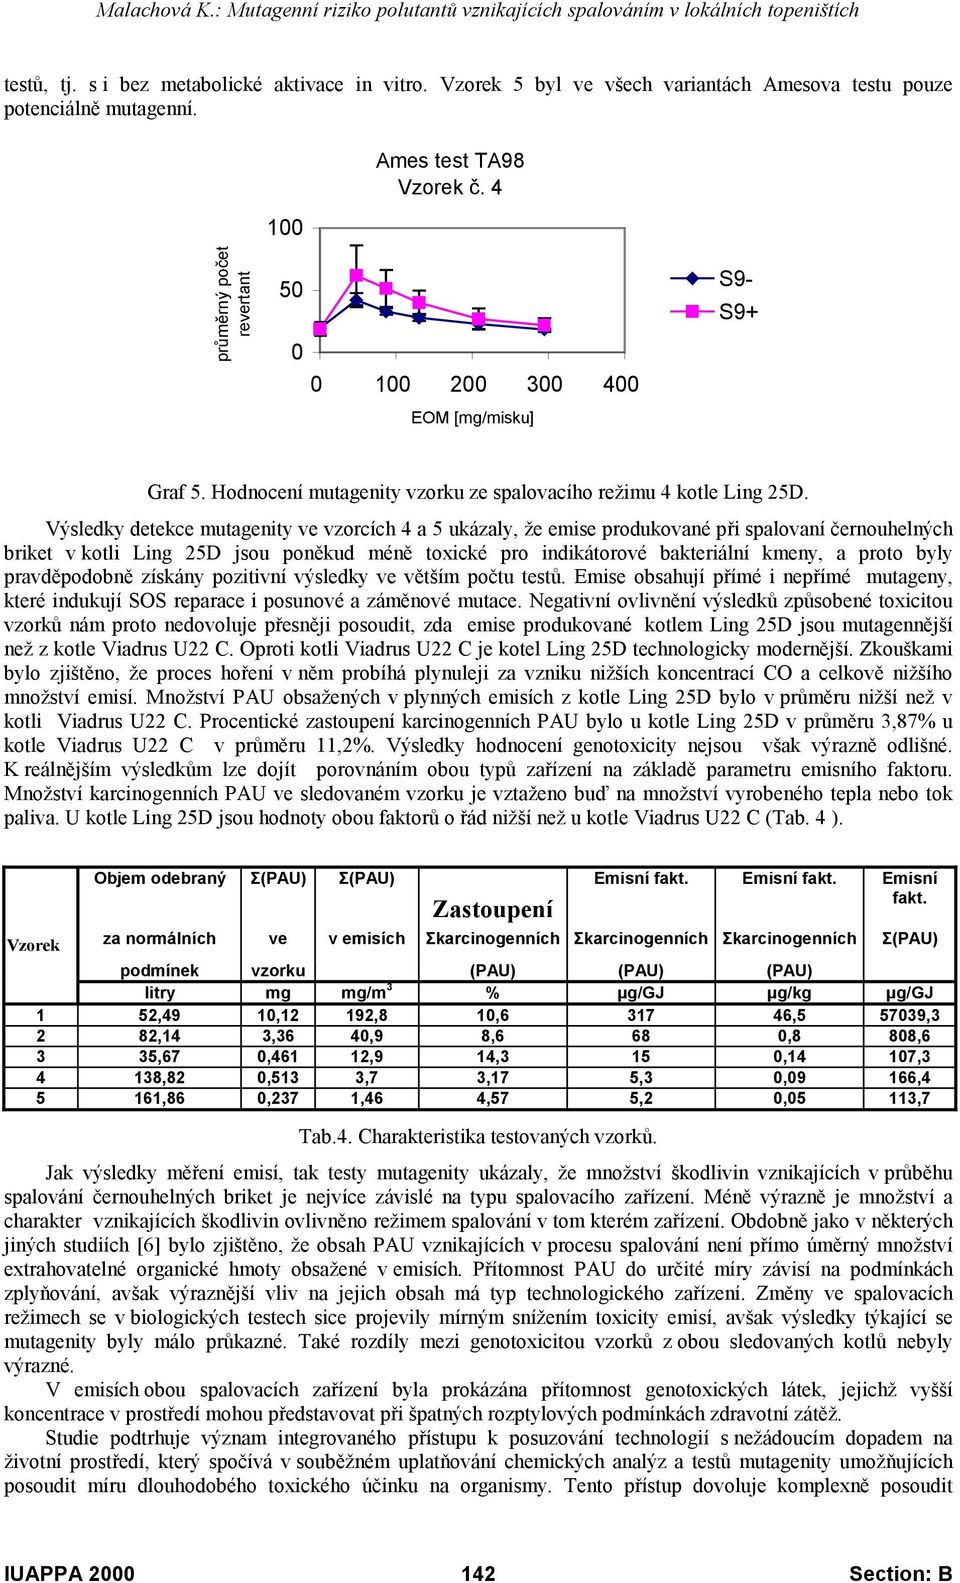 Výsledky detekce mutagenity ve vzorcích 4 a 5 ukázaly, že emise produkované při spalovaní černouhelných briket v kotli Ling 25D jsou poněkud méně toxické pro indikátorové bakteriální kmeny, a proto